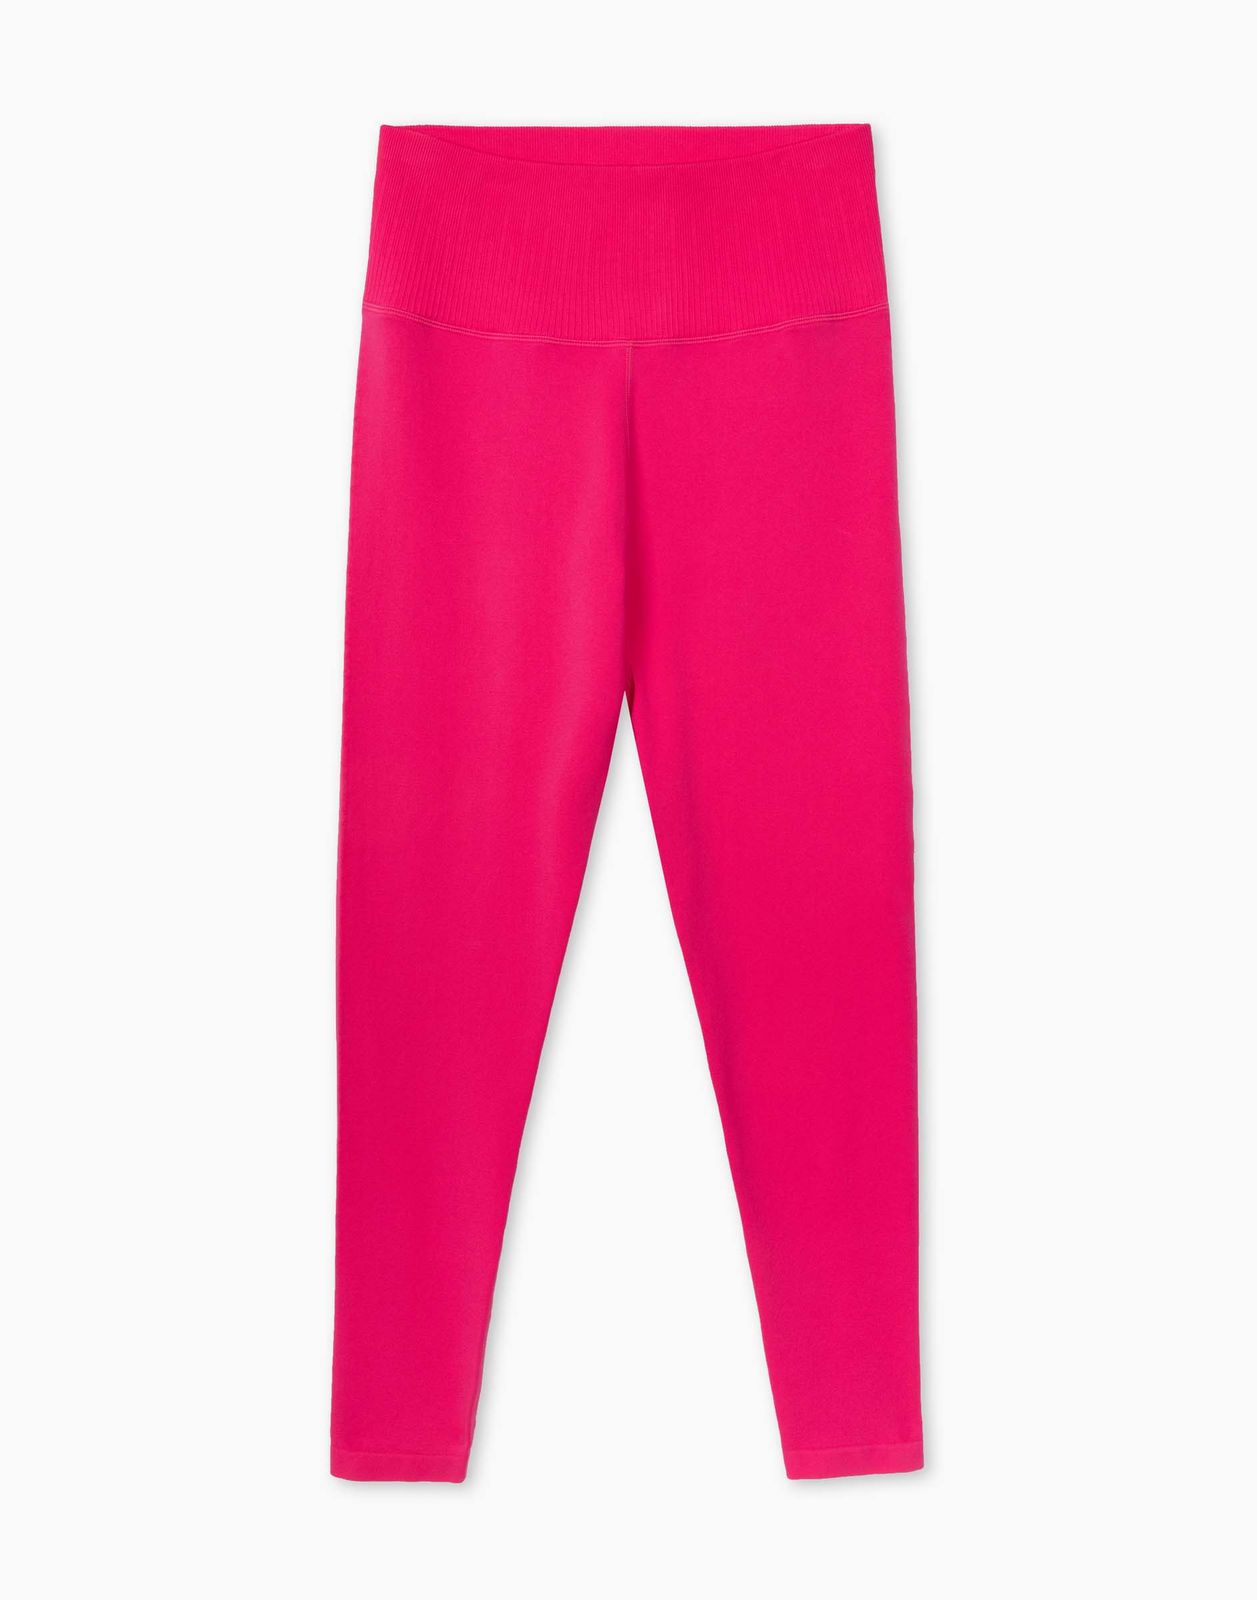 Спортивные леггинсы женские Gloria Jeans GRT000422 розовые S/170 (40-42)